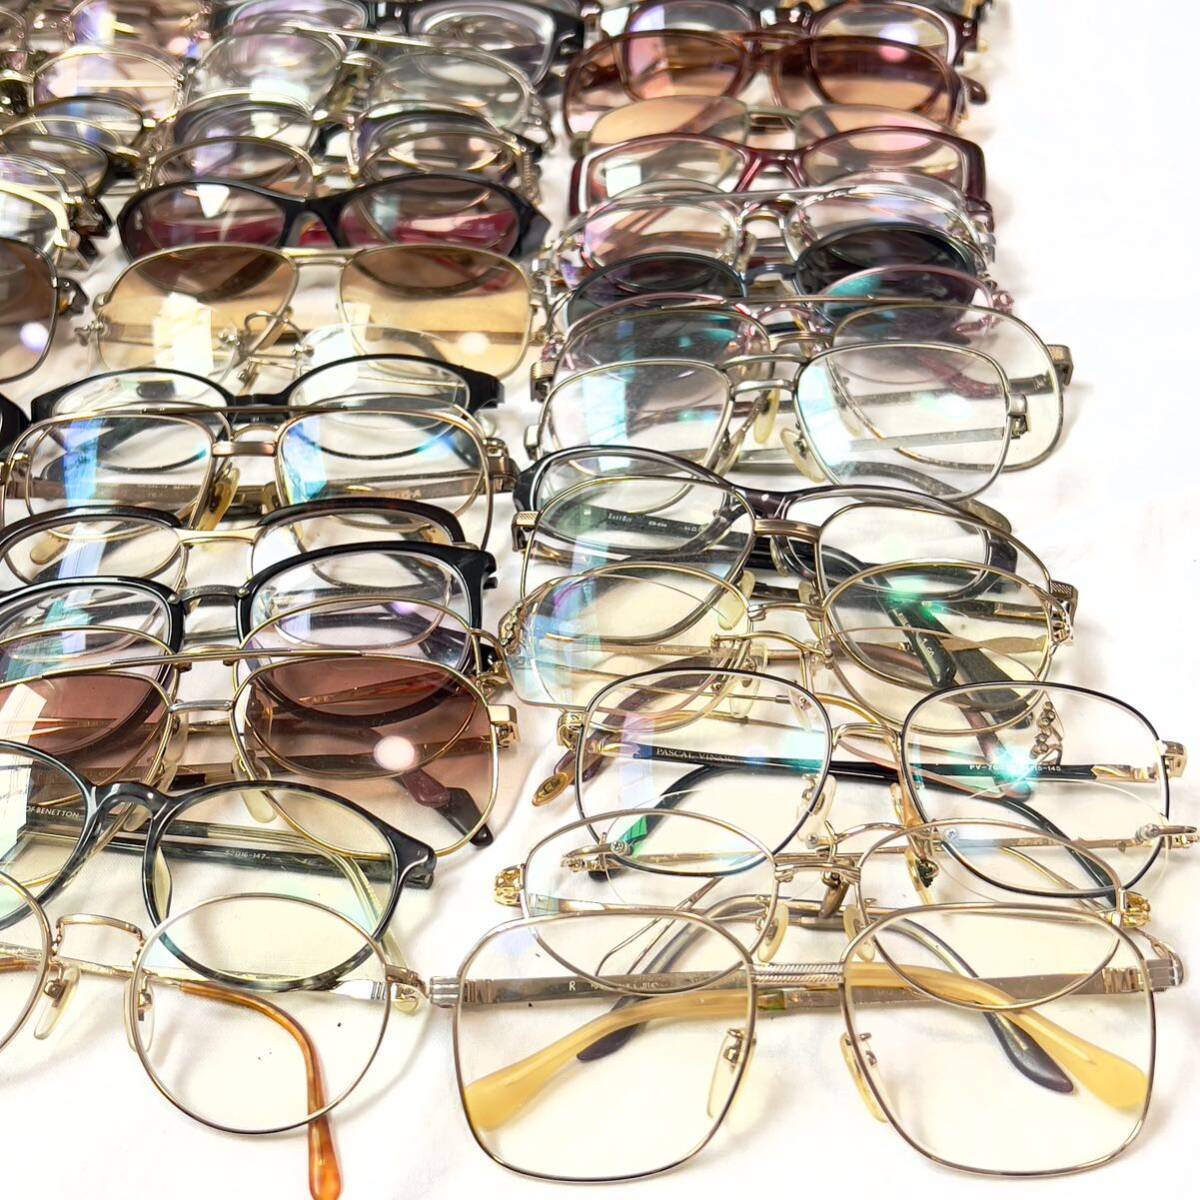  Junk очки очки рама 200 пункт и больше продажа комплектом ④ Fendi Burberry Dupont и т.п. солнцезащитные очки совместно много комплект 